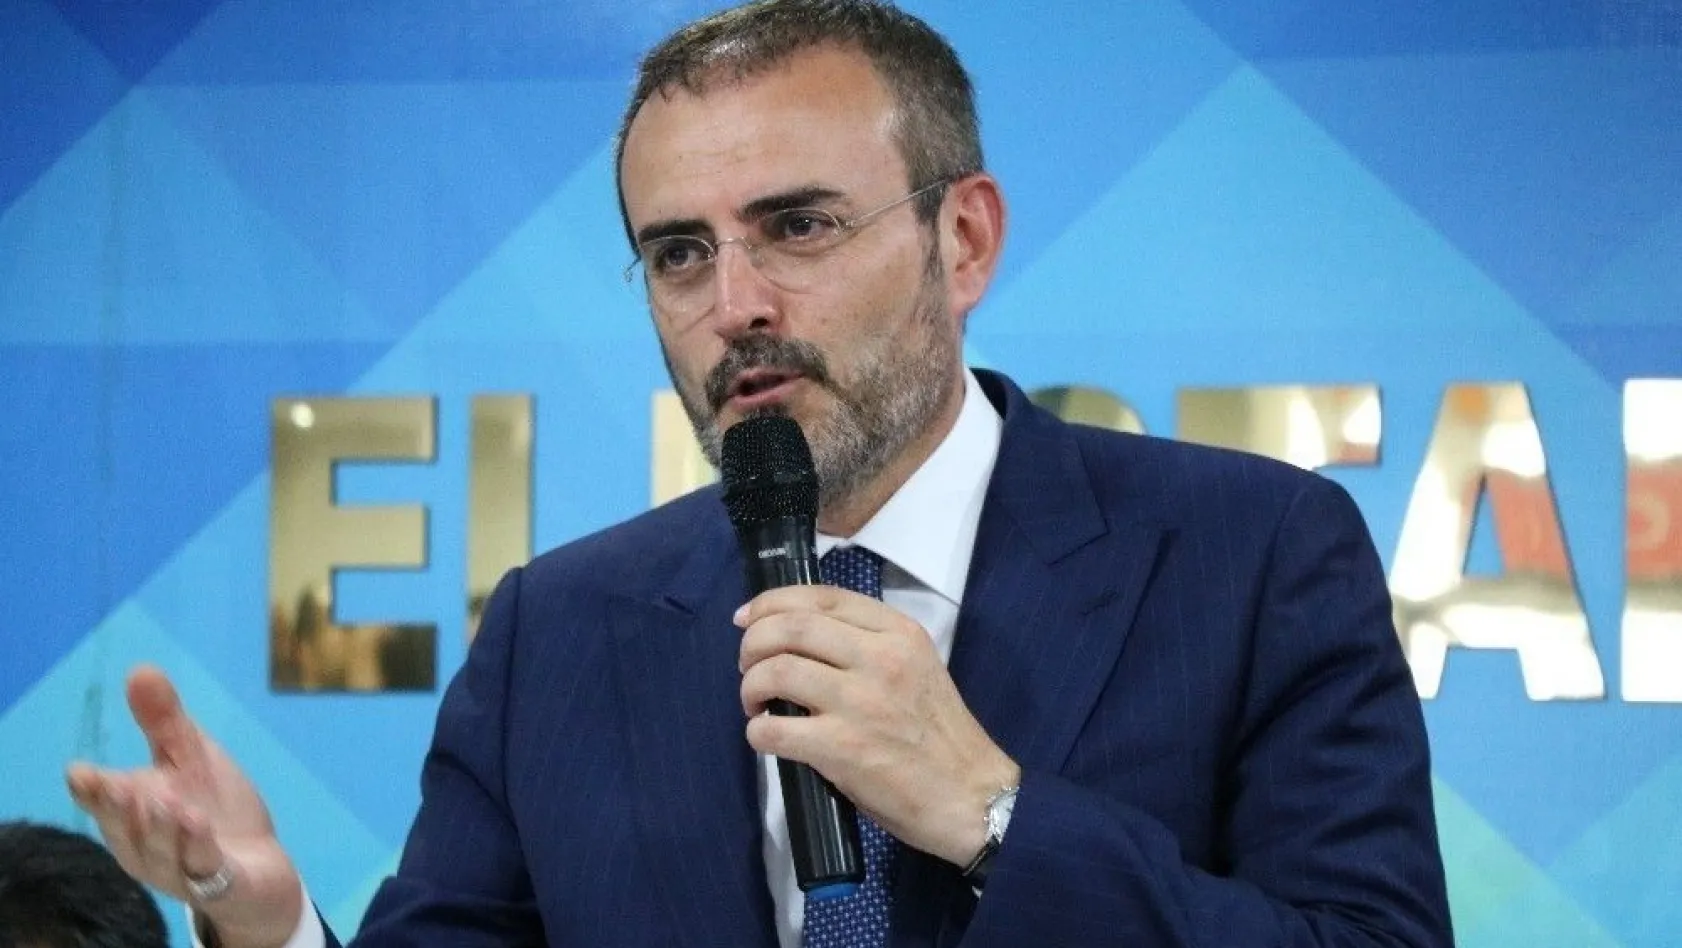 AK Parti Sözcüsü Mahir Ünal: 'Kılıçdaroğlu çirkin diliyle siyaseti zehirliyor'
